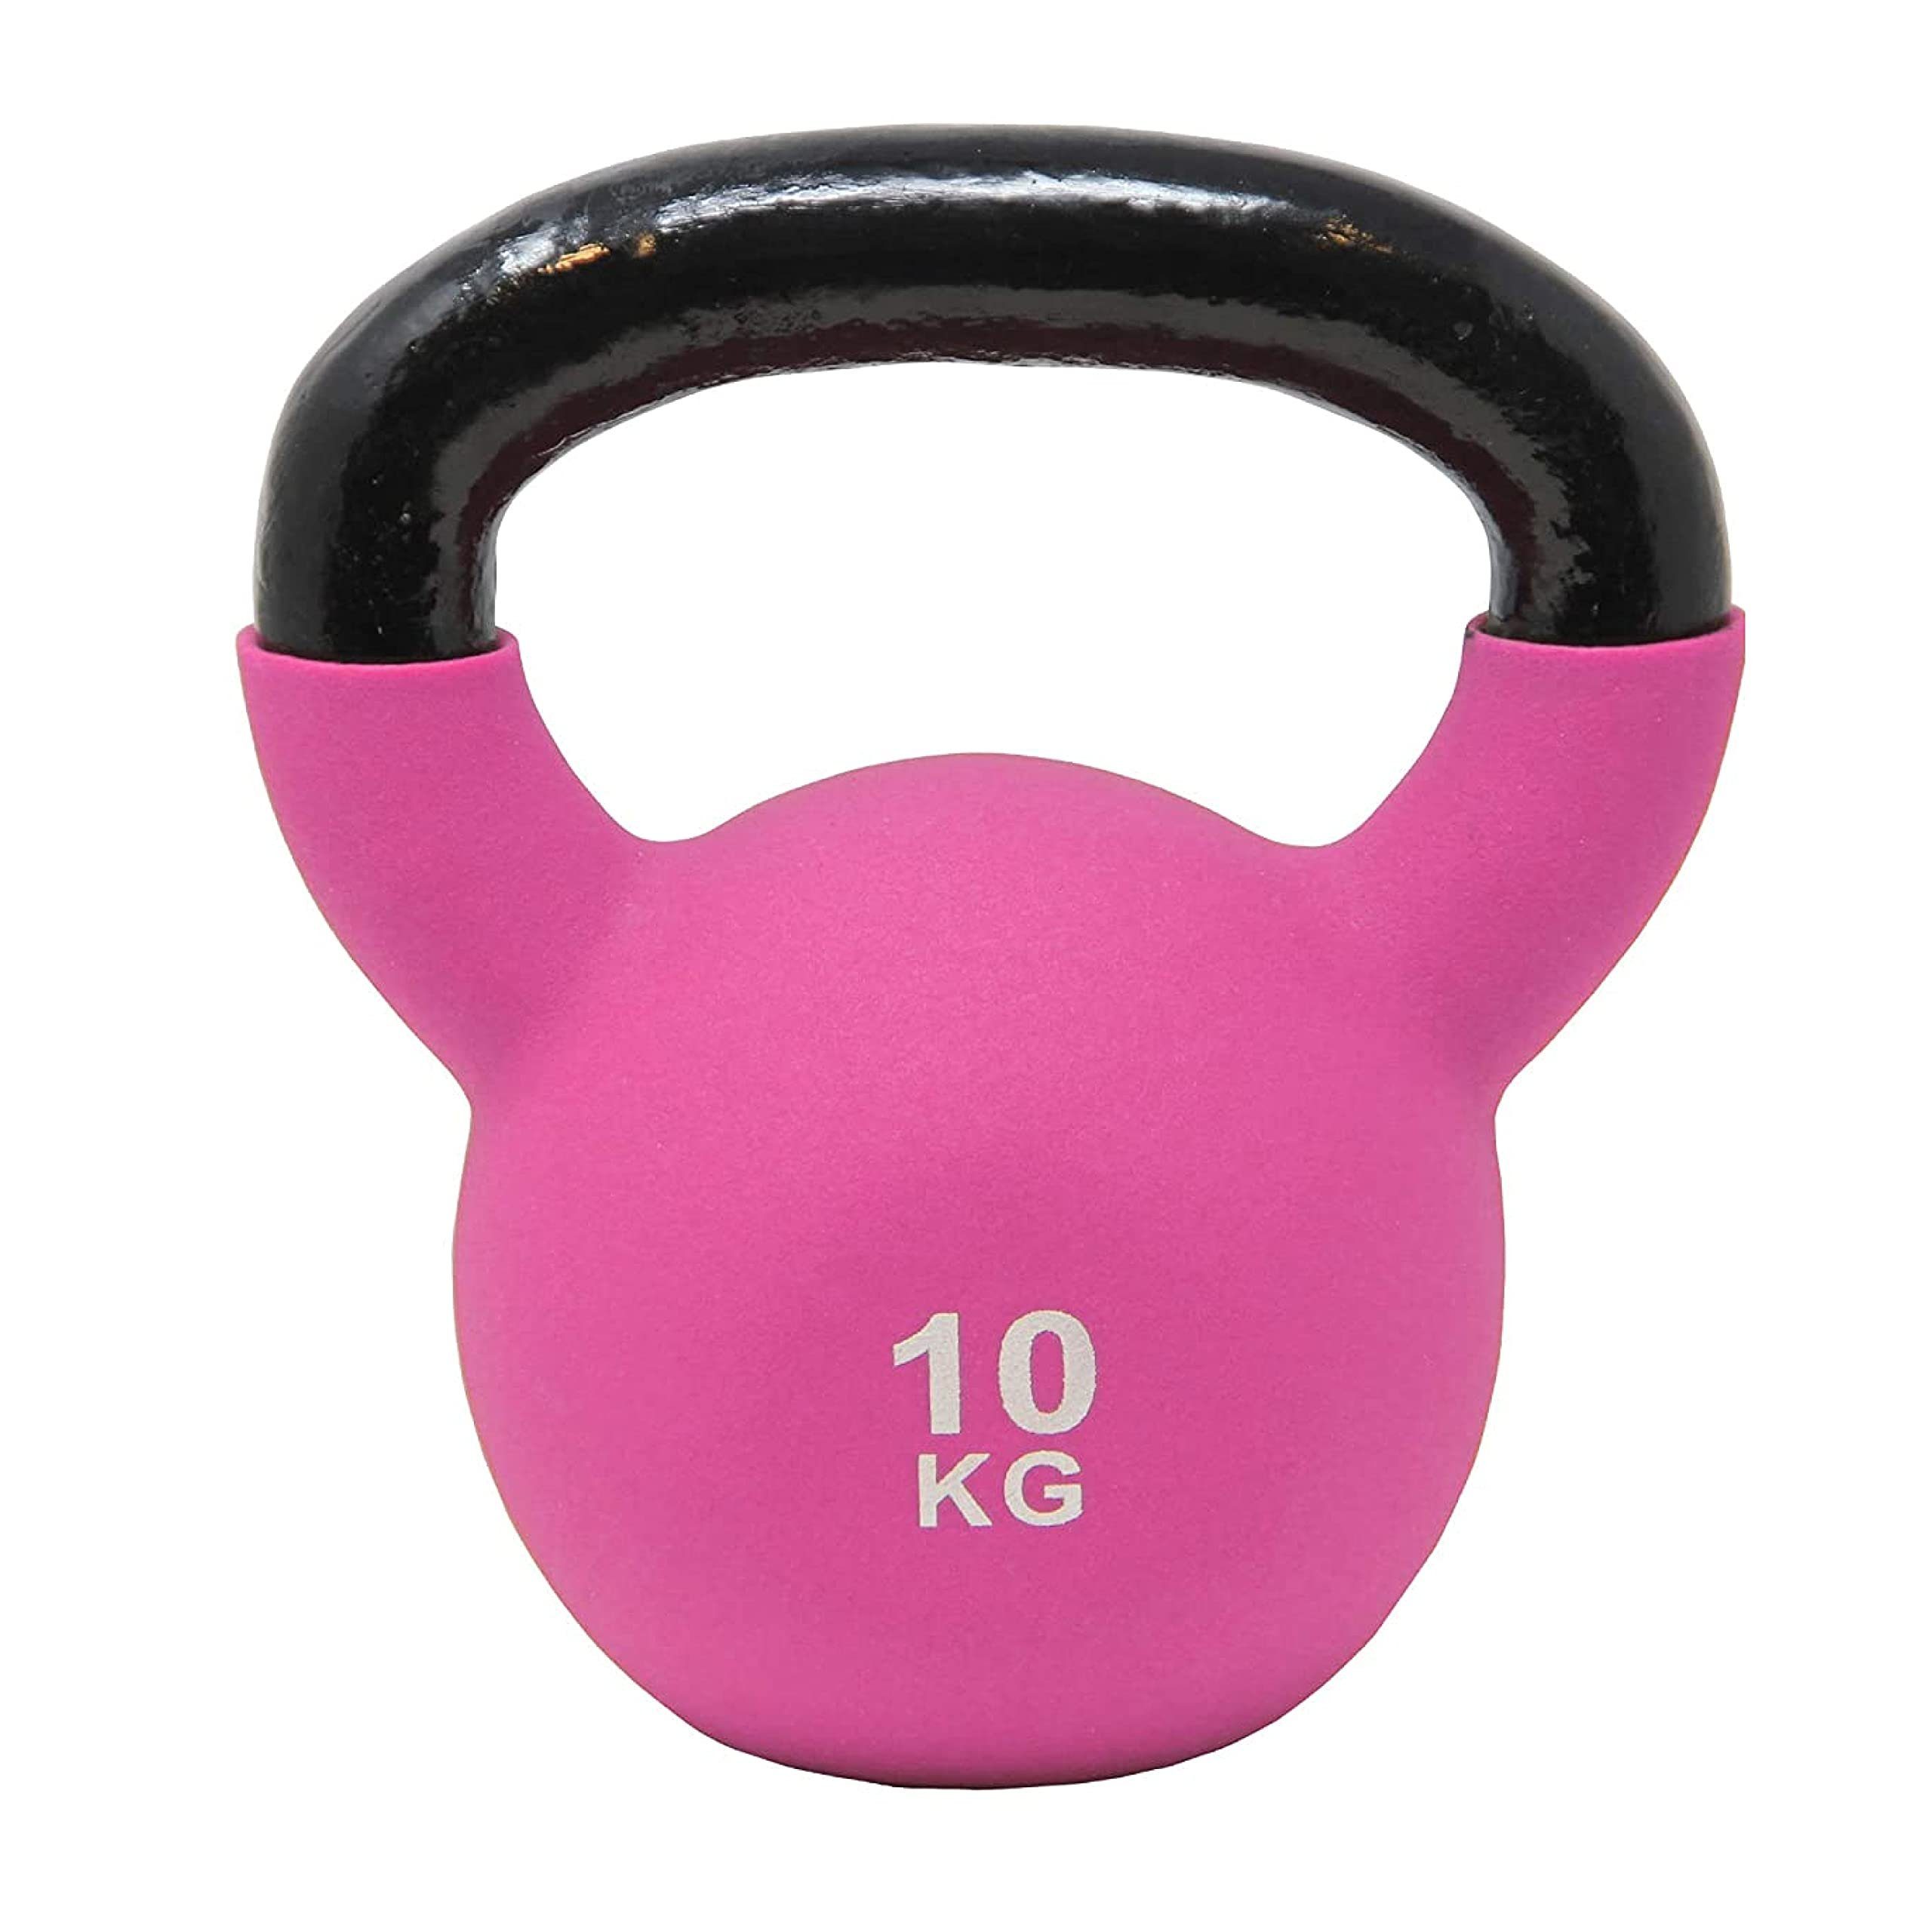 POWRX Kettlebell kg 2 Kugelhantel Neopren Kg Farben/Gewichte, versch. (Gelb) inkl. Workout, 2-26